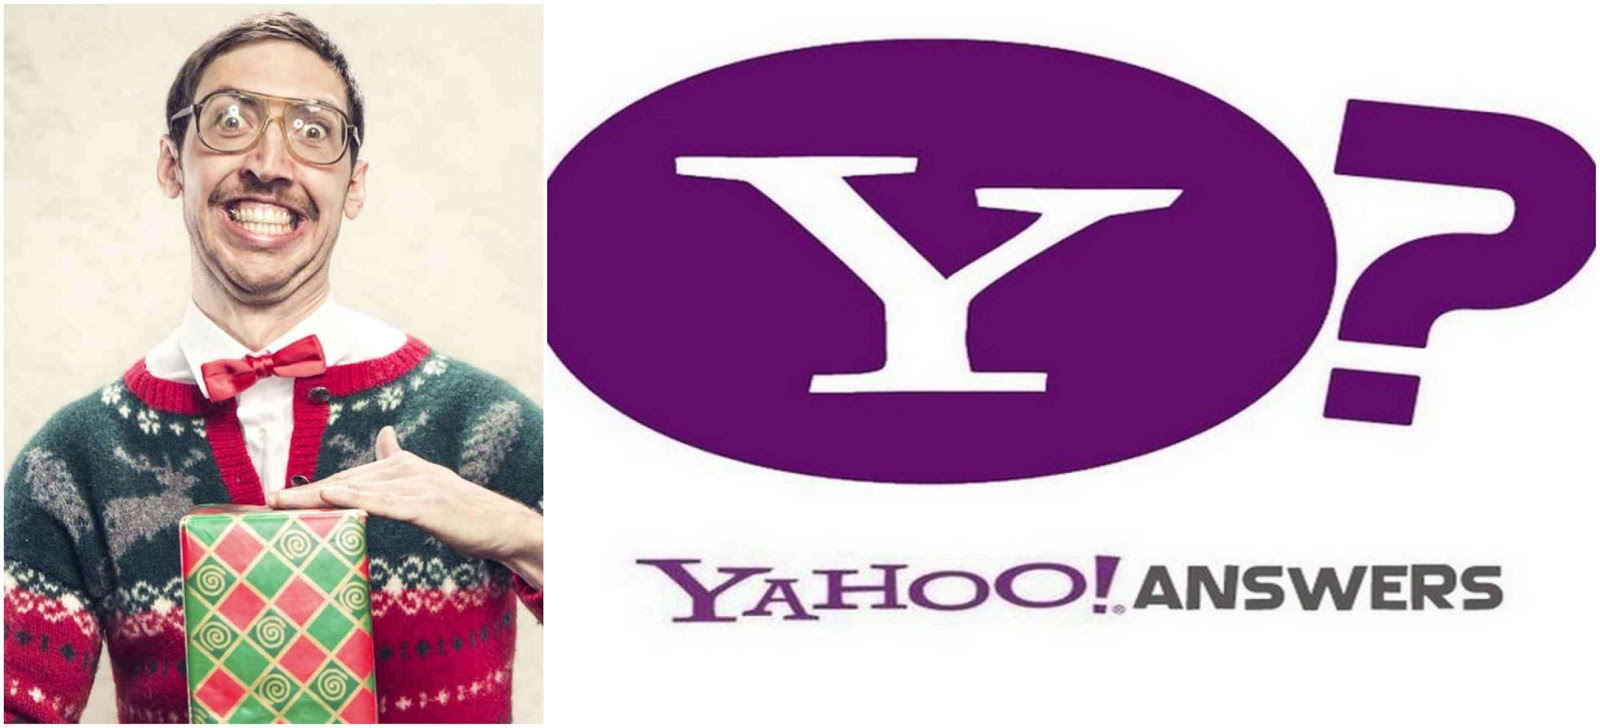 Albero Di Natale Yahoo.L Internetturbino Cosi Parlo Yahoo Answers Regali Di Natale Brutti